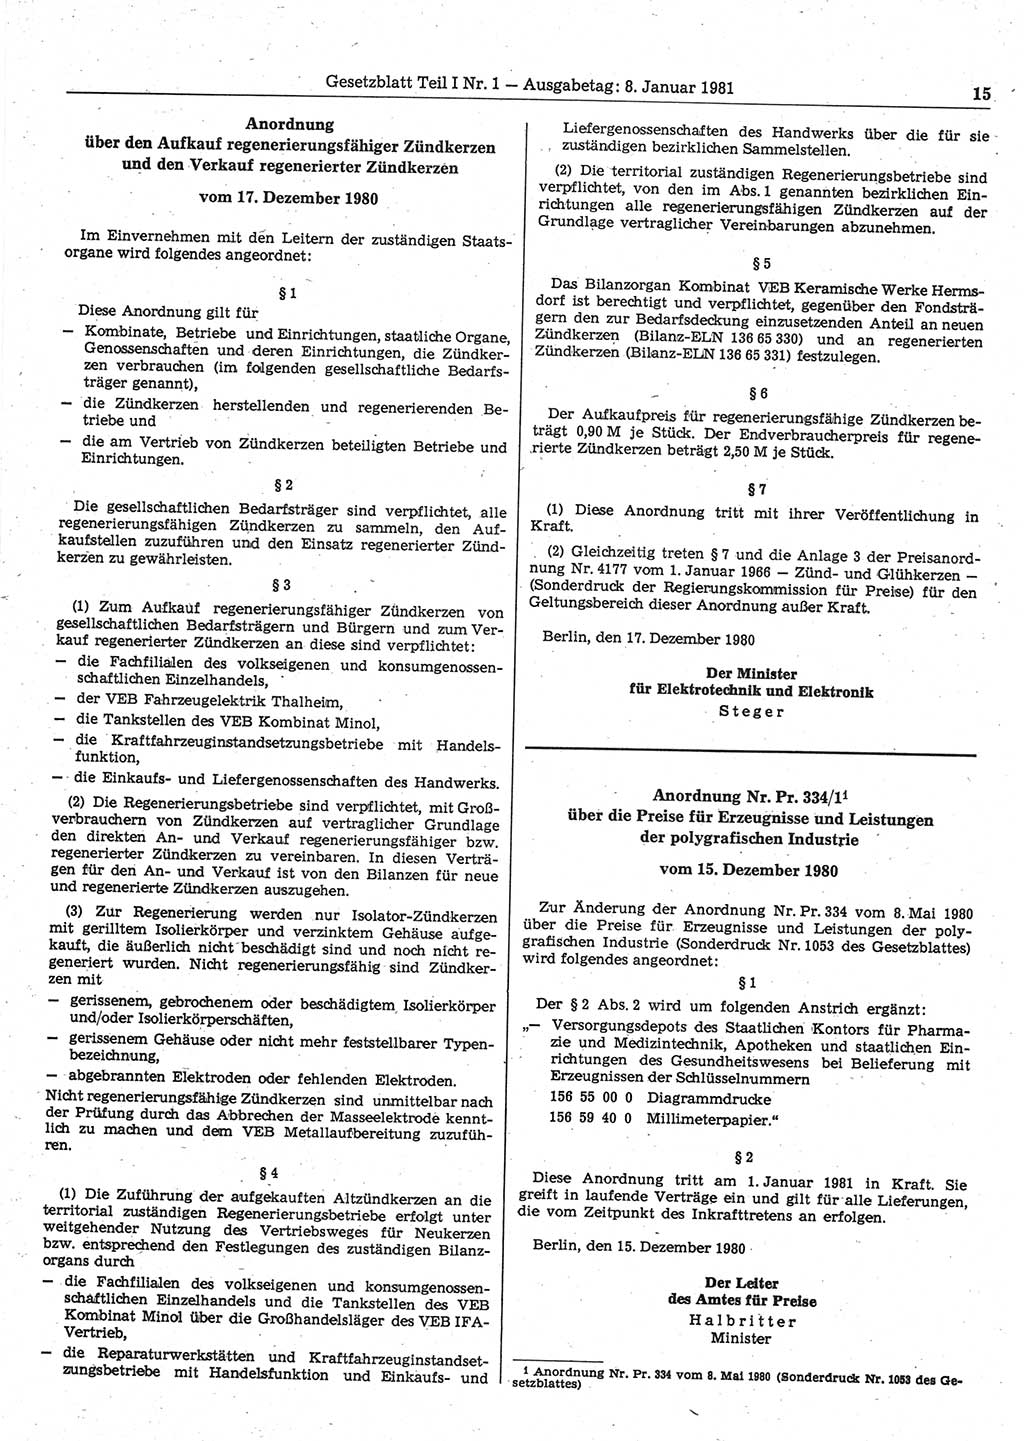 Gesetzblatt (GBl.) der Deutschen Demokratischen Republik (DDR) Teil Ⅰ 1981, Seite 15 (GBl. DDR Ⅰ 1981, S. 15)